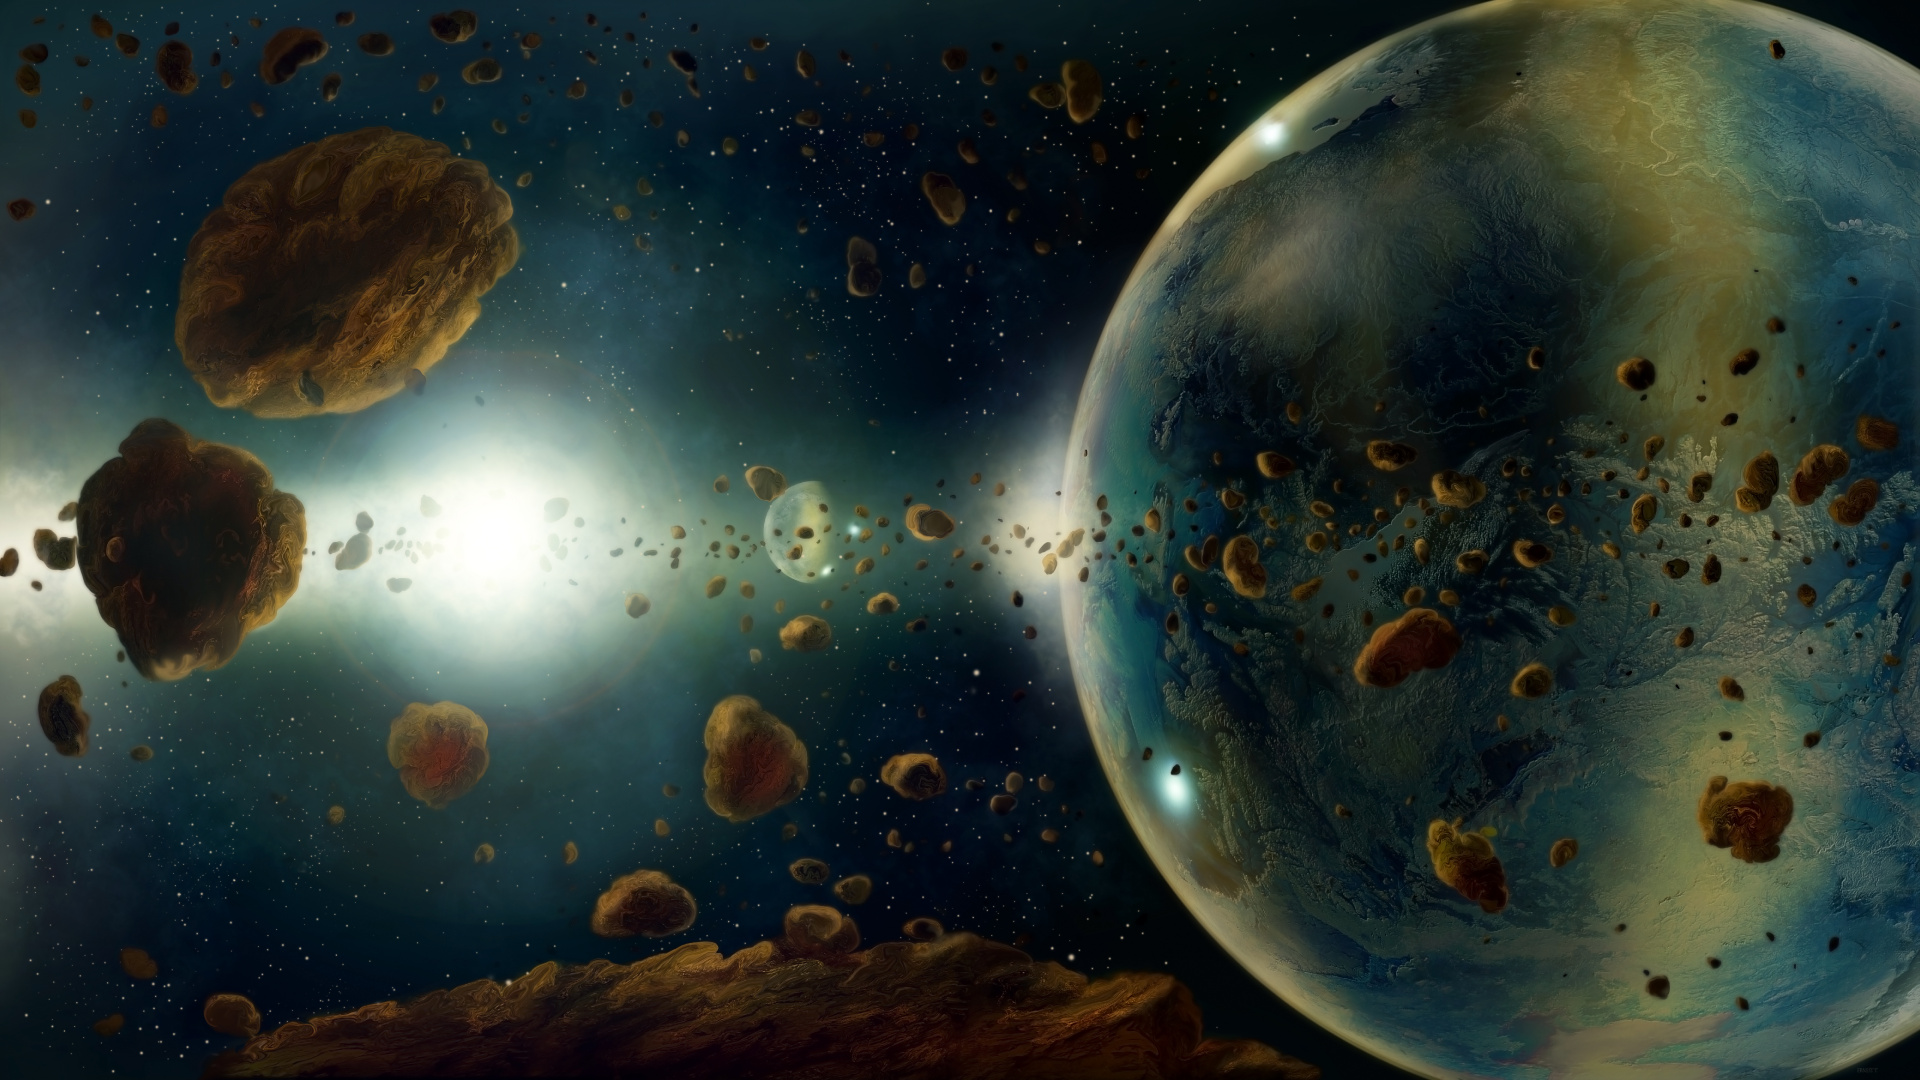 小行星, 这个星球, 外层空间, 天文学对象, 宇宙 壁纸 1920x1080 允许